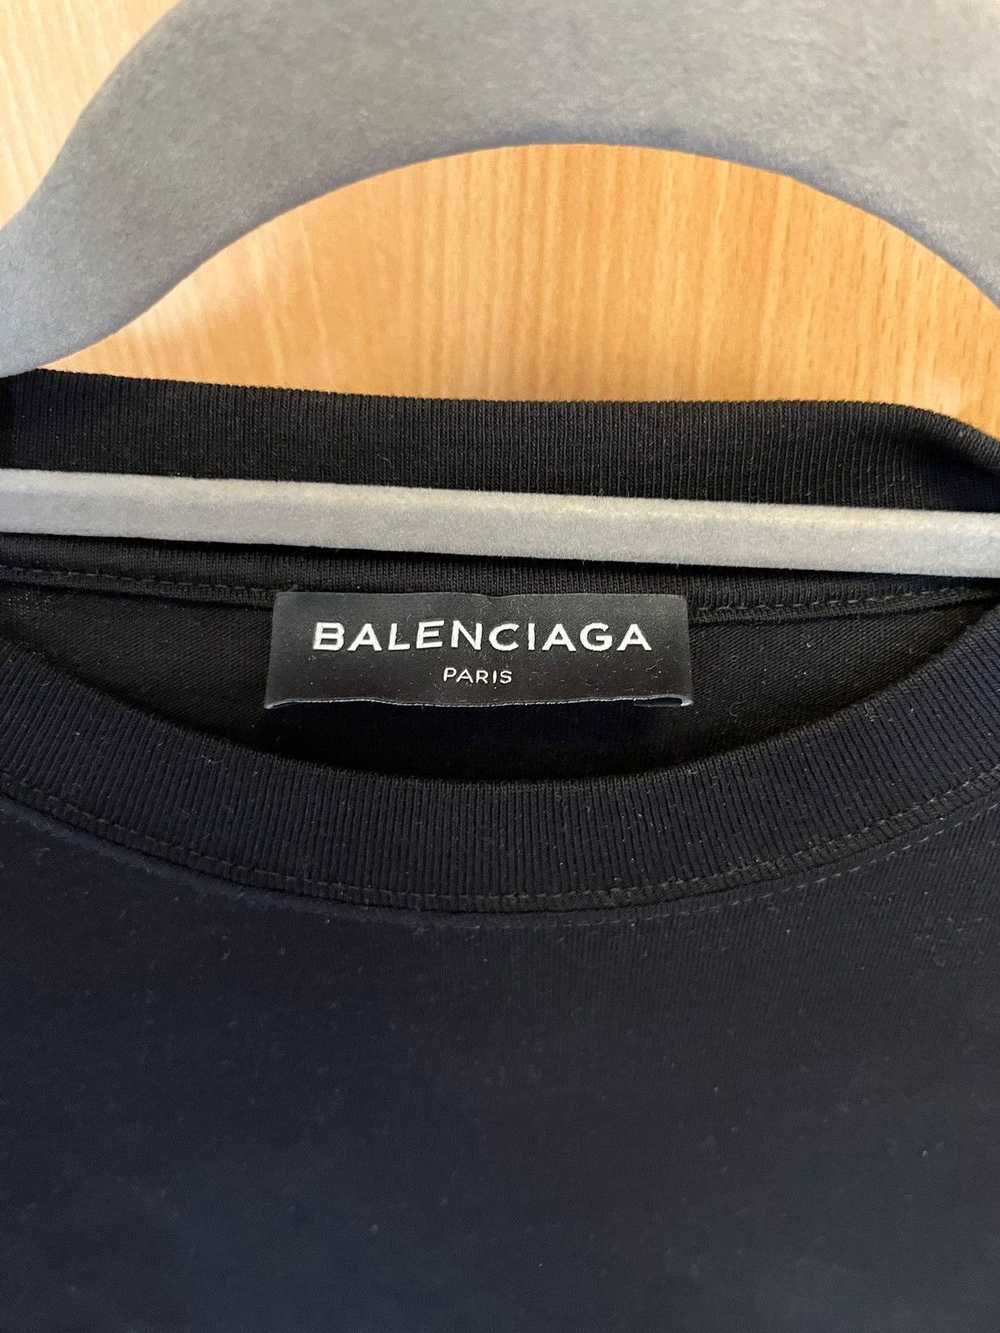 Balenciaga Balenciaga Campaign T-Shirt - image 5